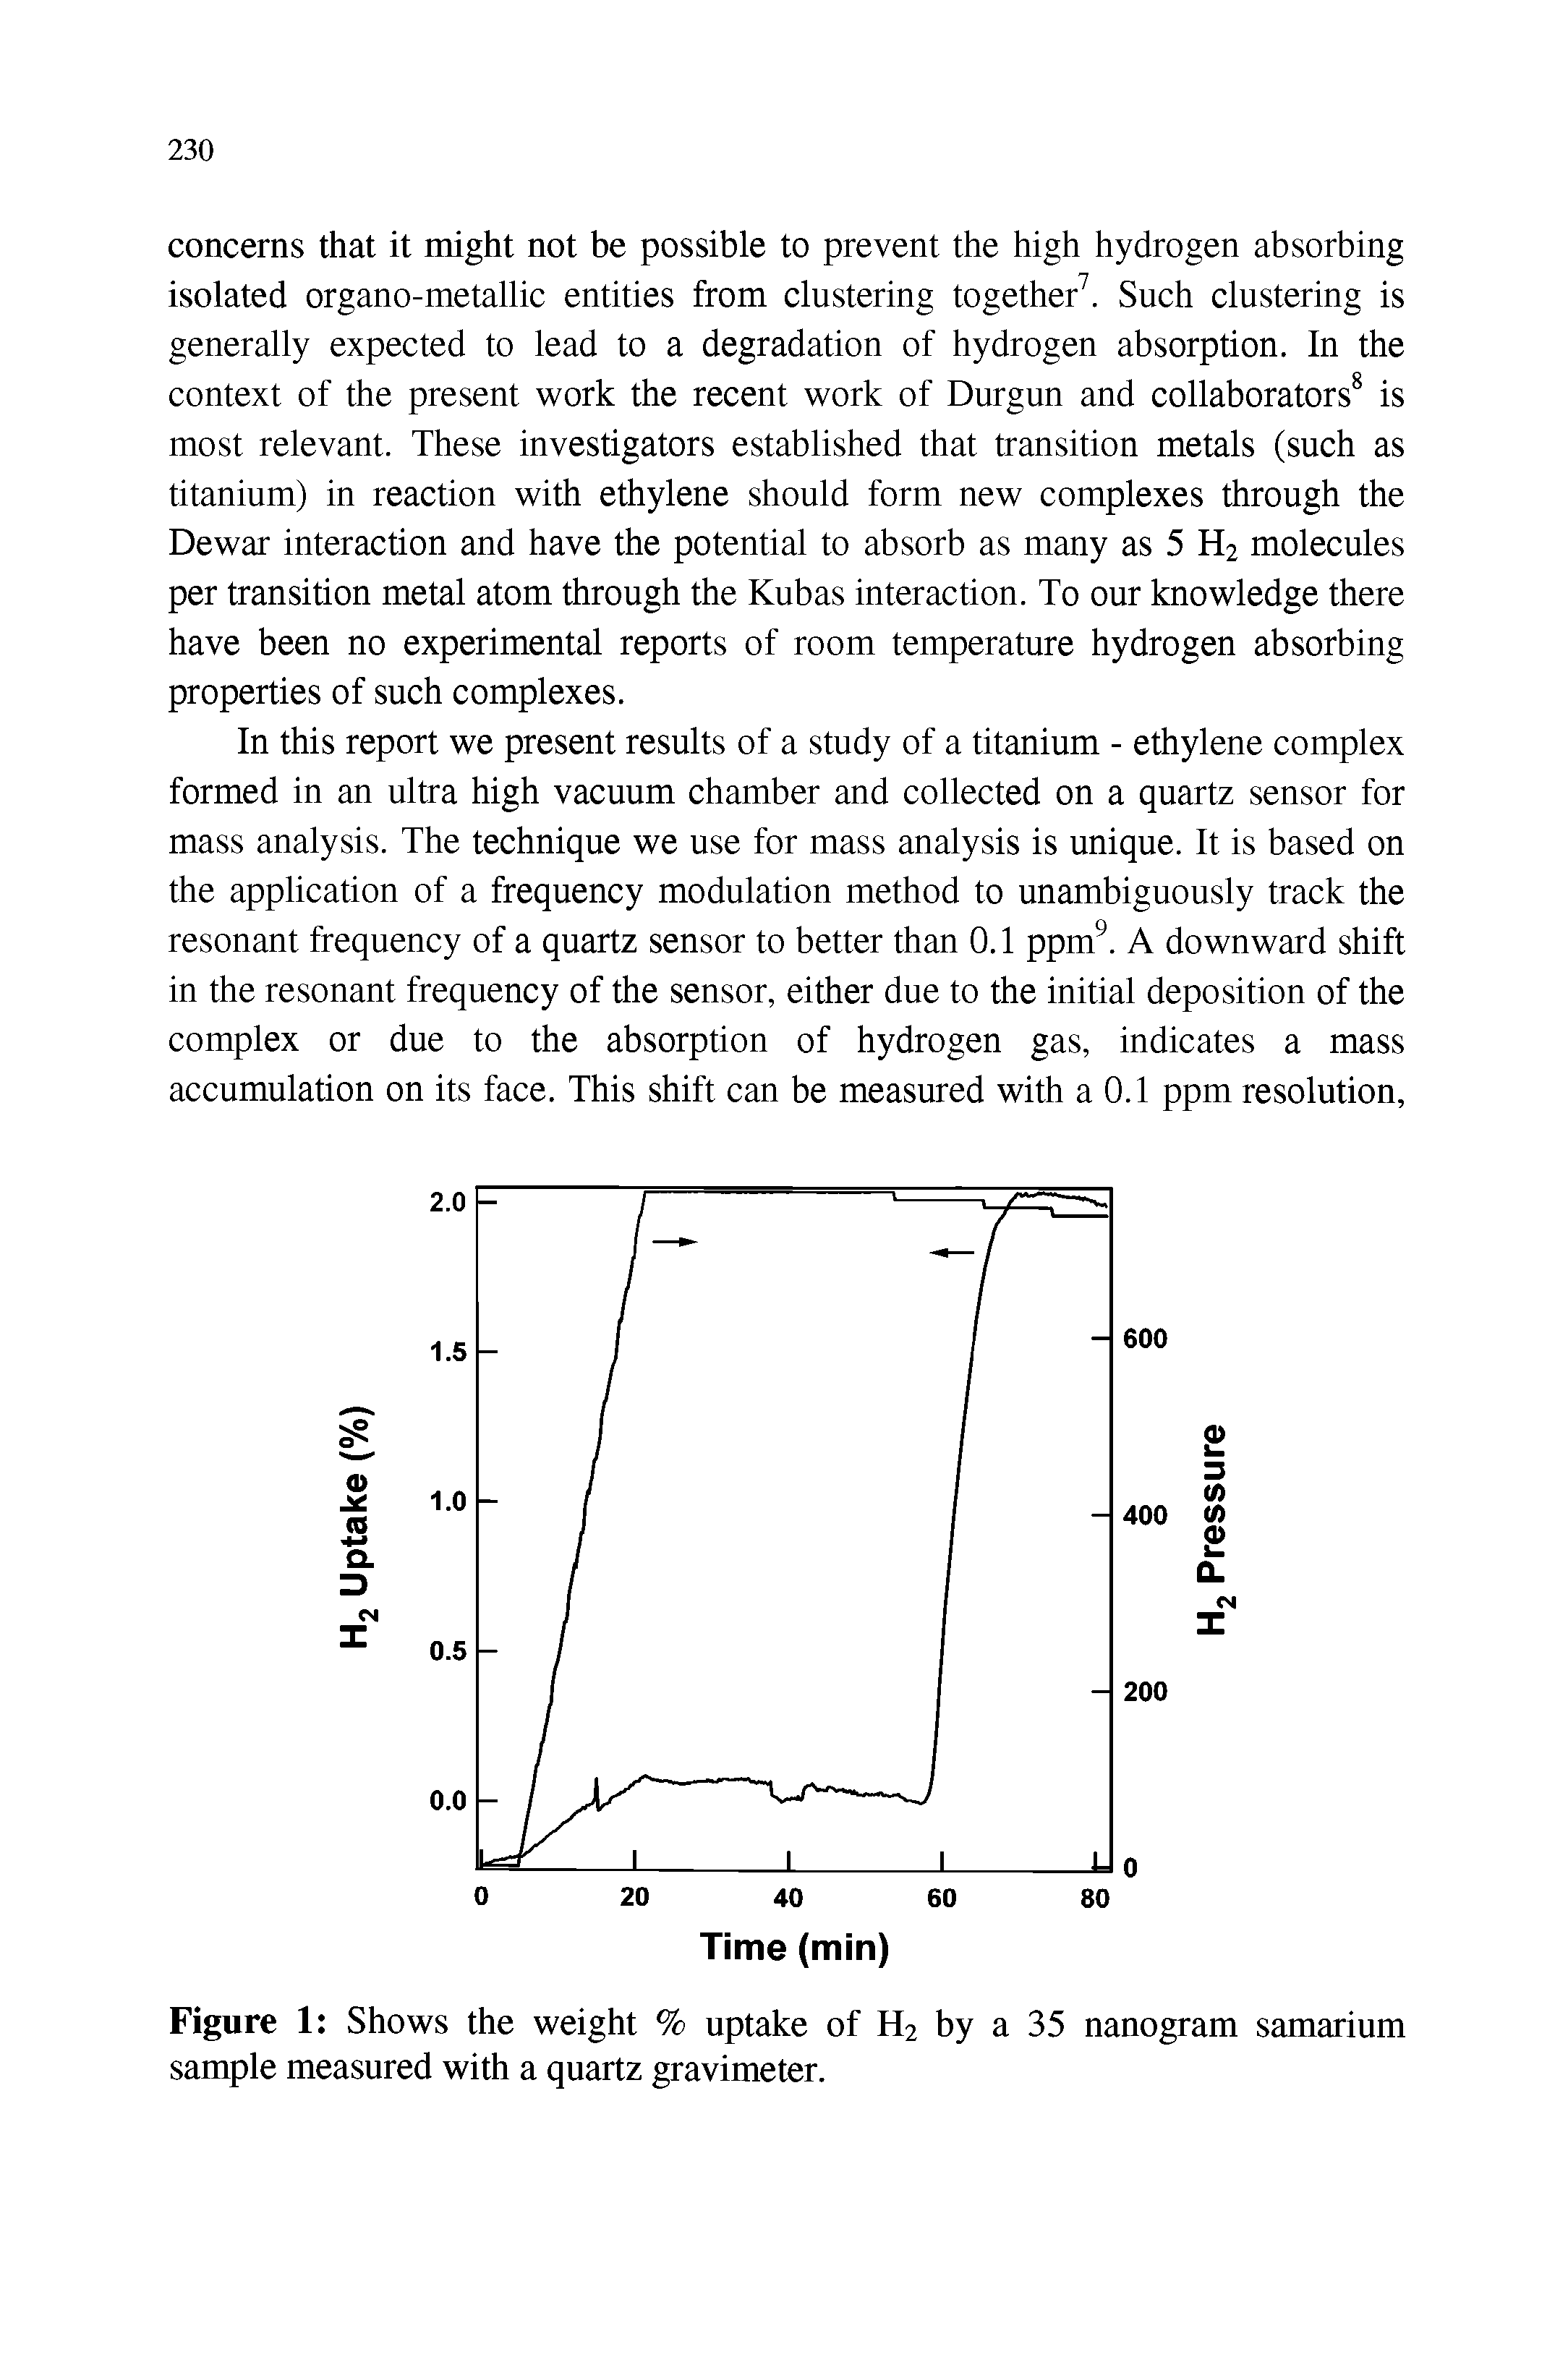 Figure 1 Shows the weight % uptake of H2 by a 35 nanogram samarium sample measured with a quartz gravimeter.